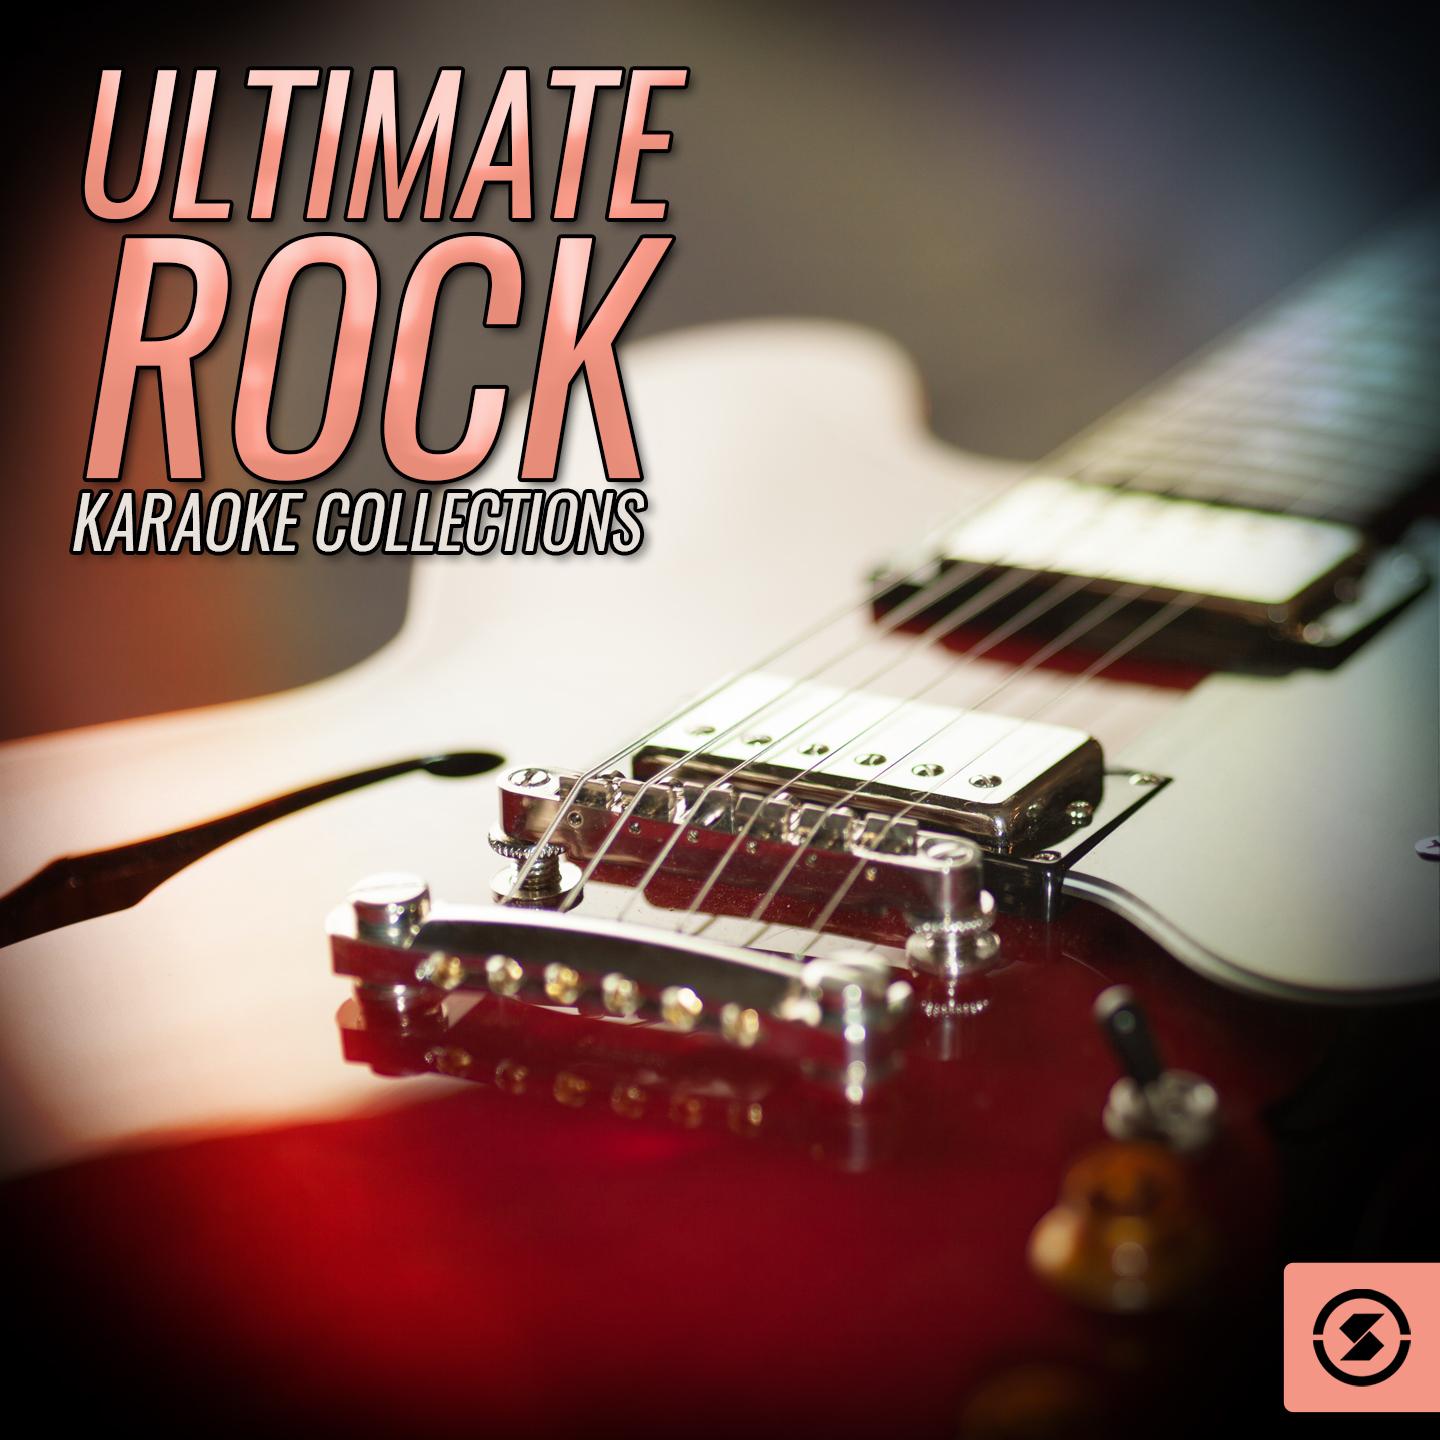 Ultimate Rock Karaoke Collections